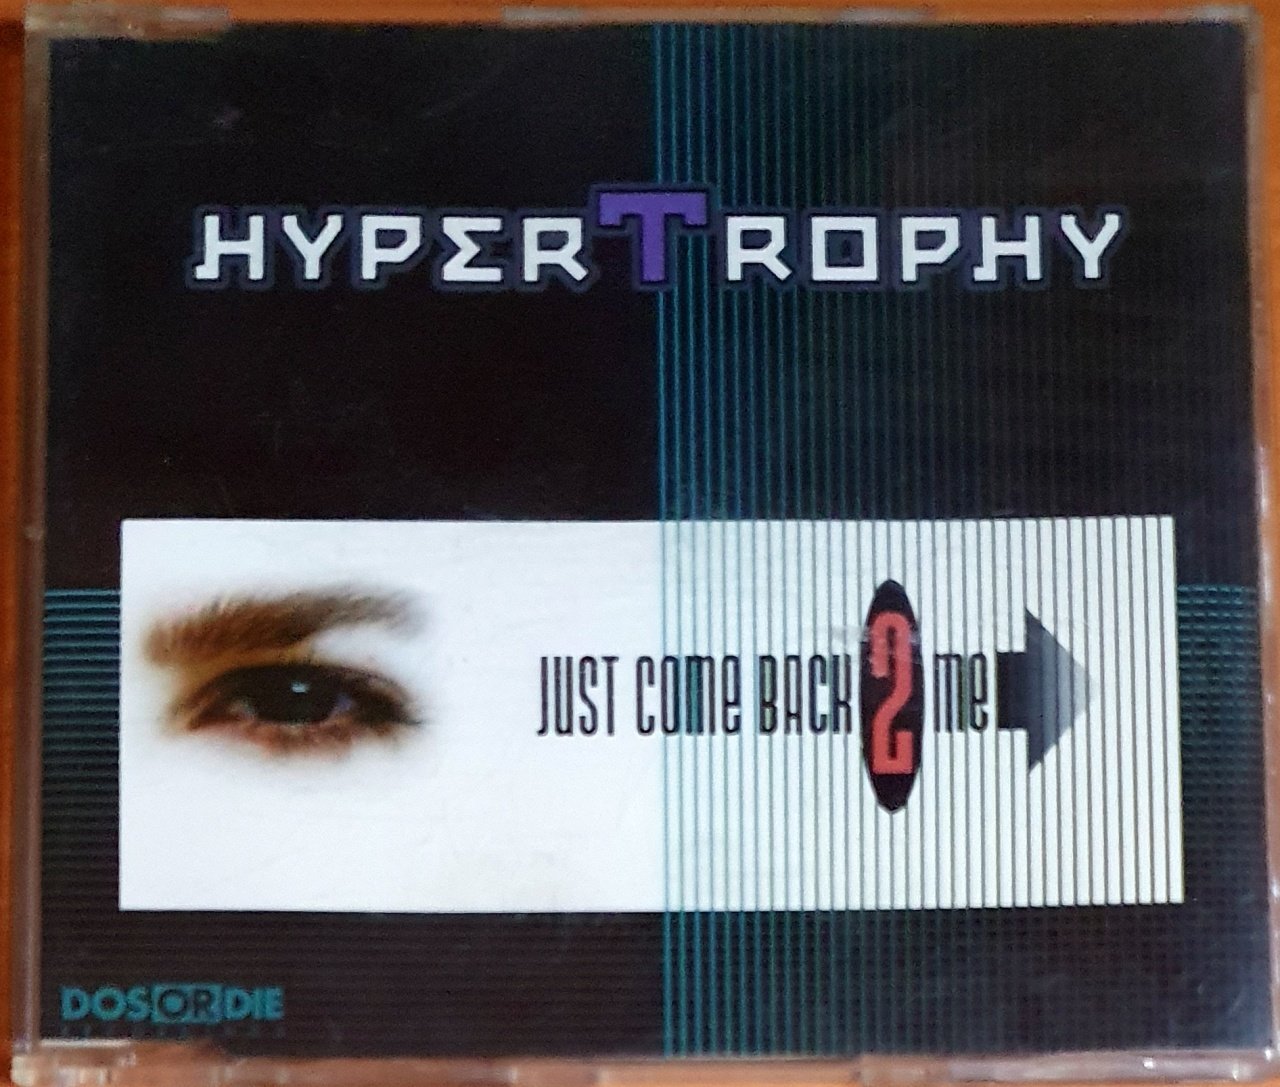 HYPERTROPHY - JUST COME BACK 2 ME (1997) - CD SINGLE 2.EL